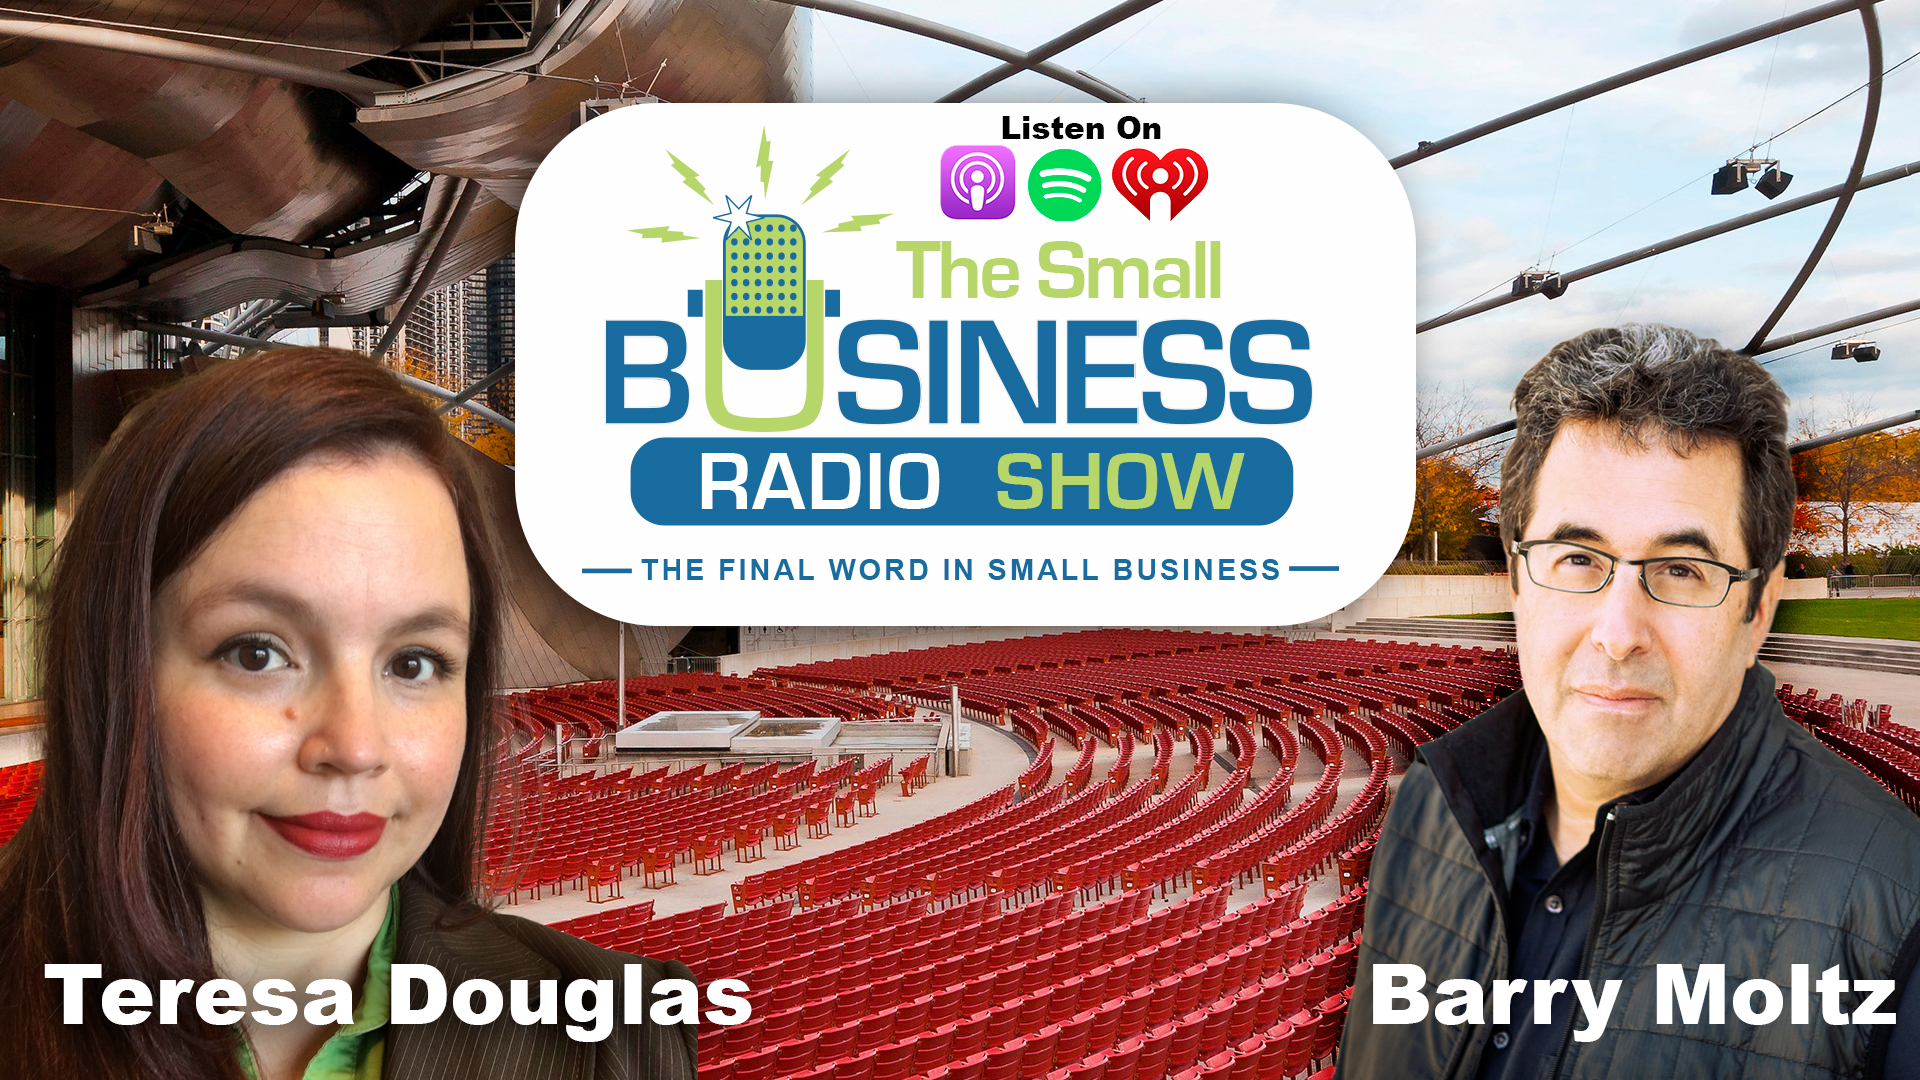 Teresa Douglas on The Small Business Radio Show